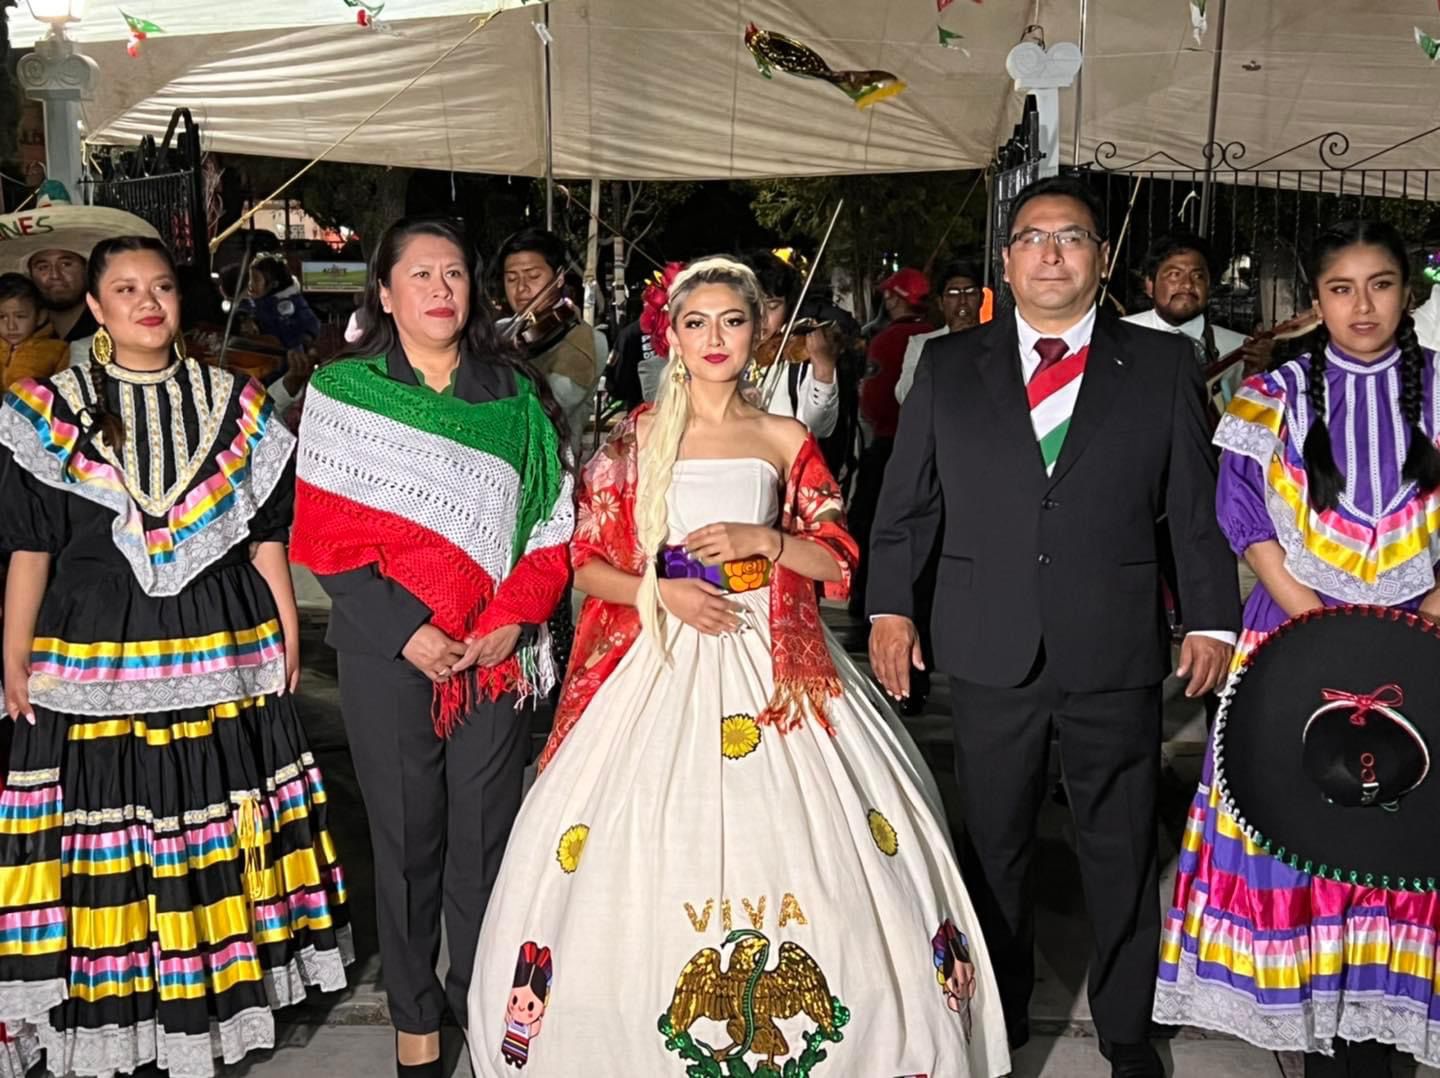 Edil de Acajete, Puebla, usa banda presidencial para el Grito de Independencia